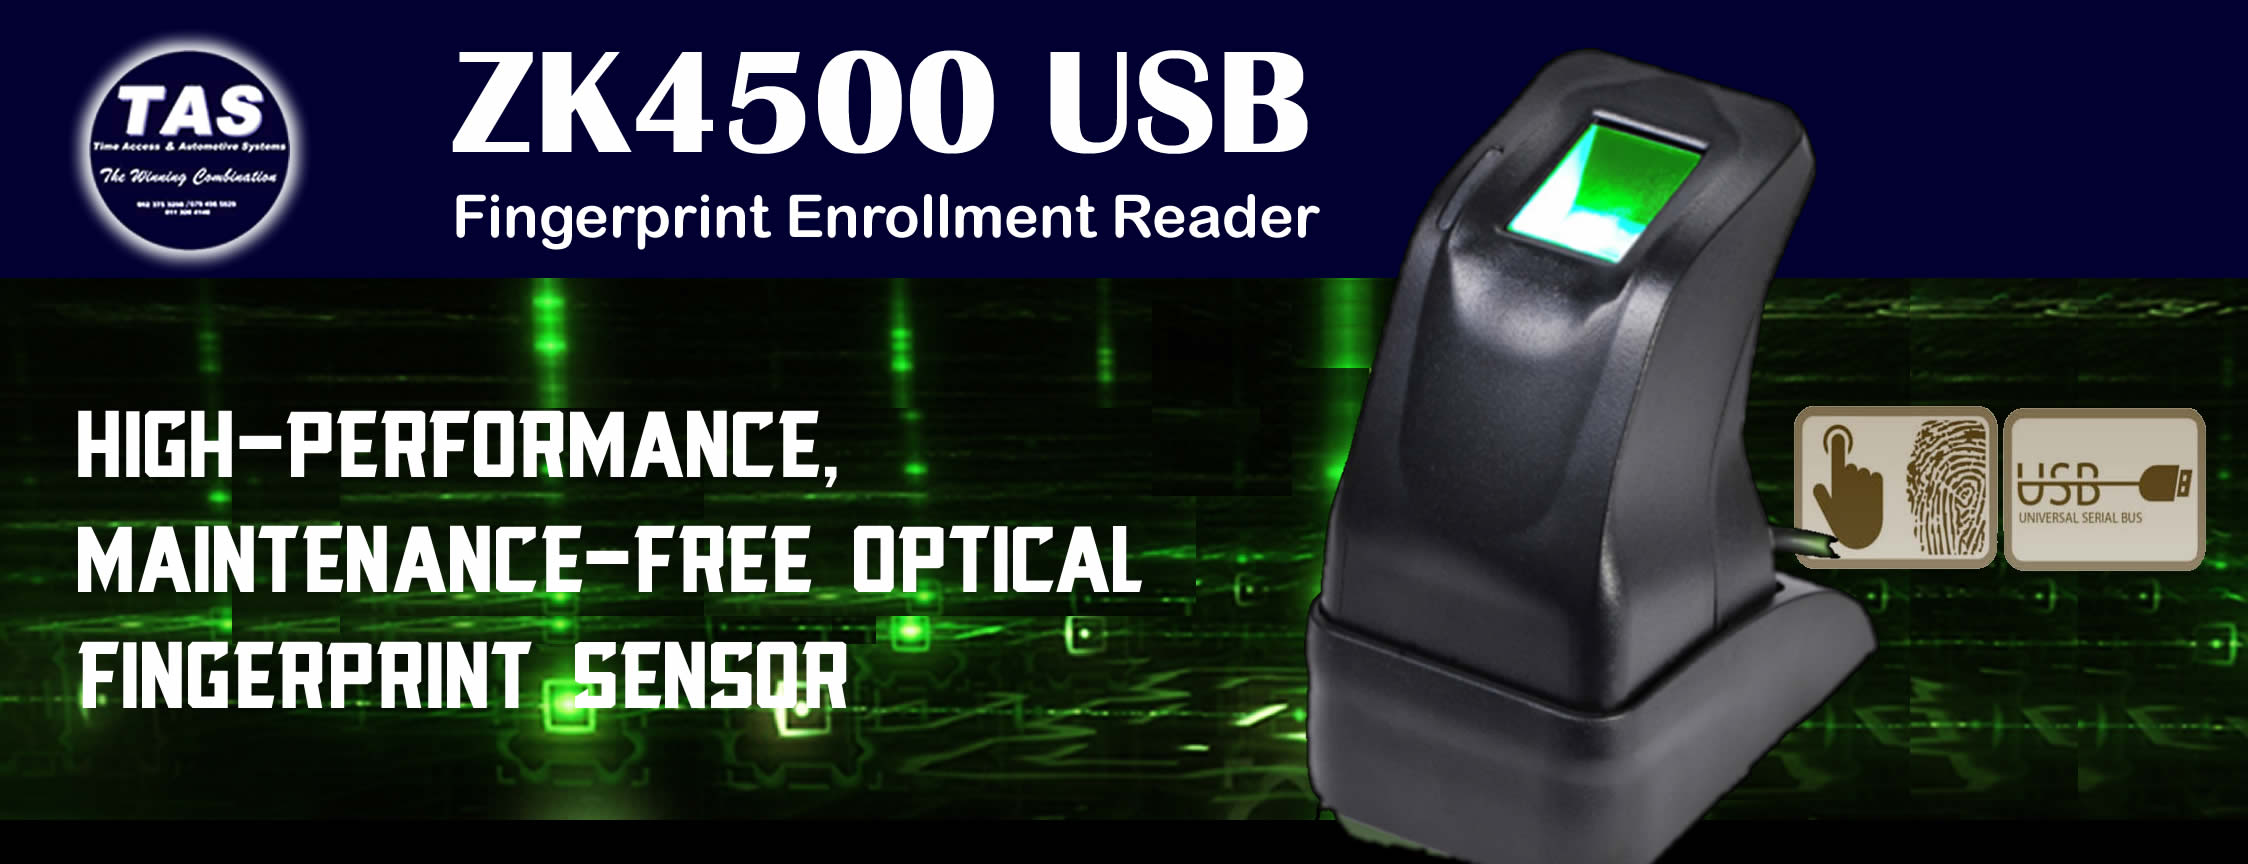 4500-usb-fingerprint-enrollment-reader